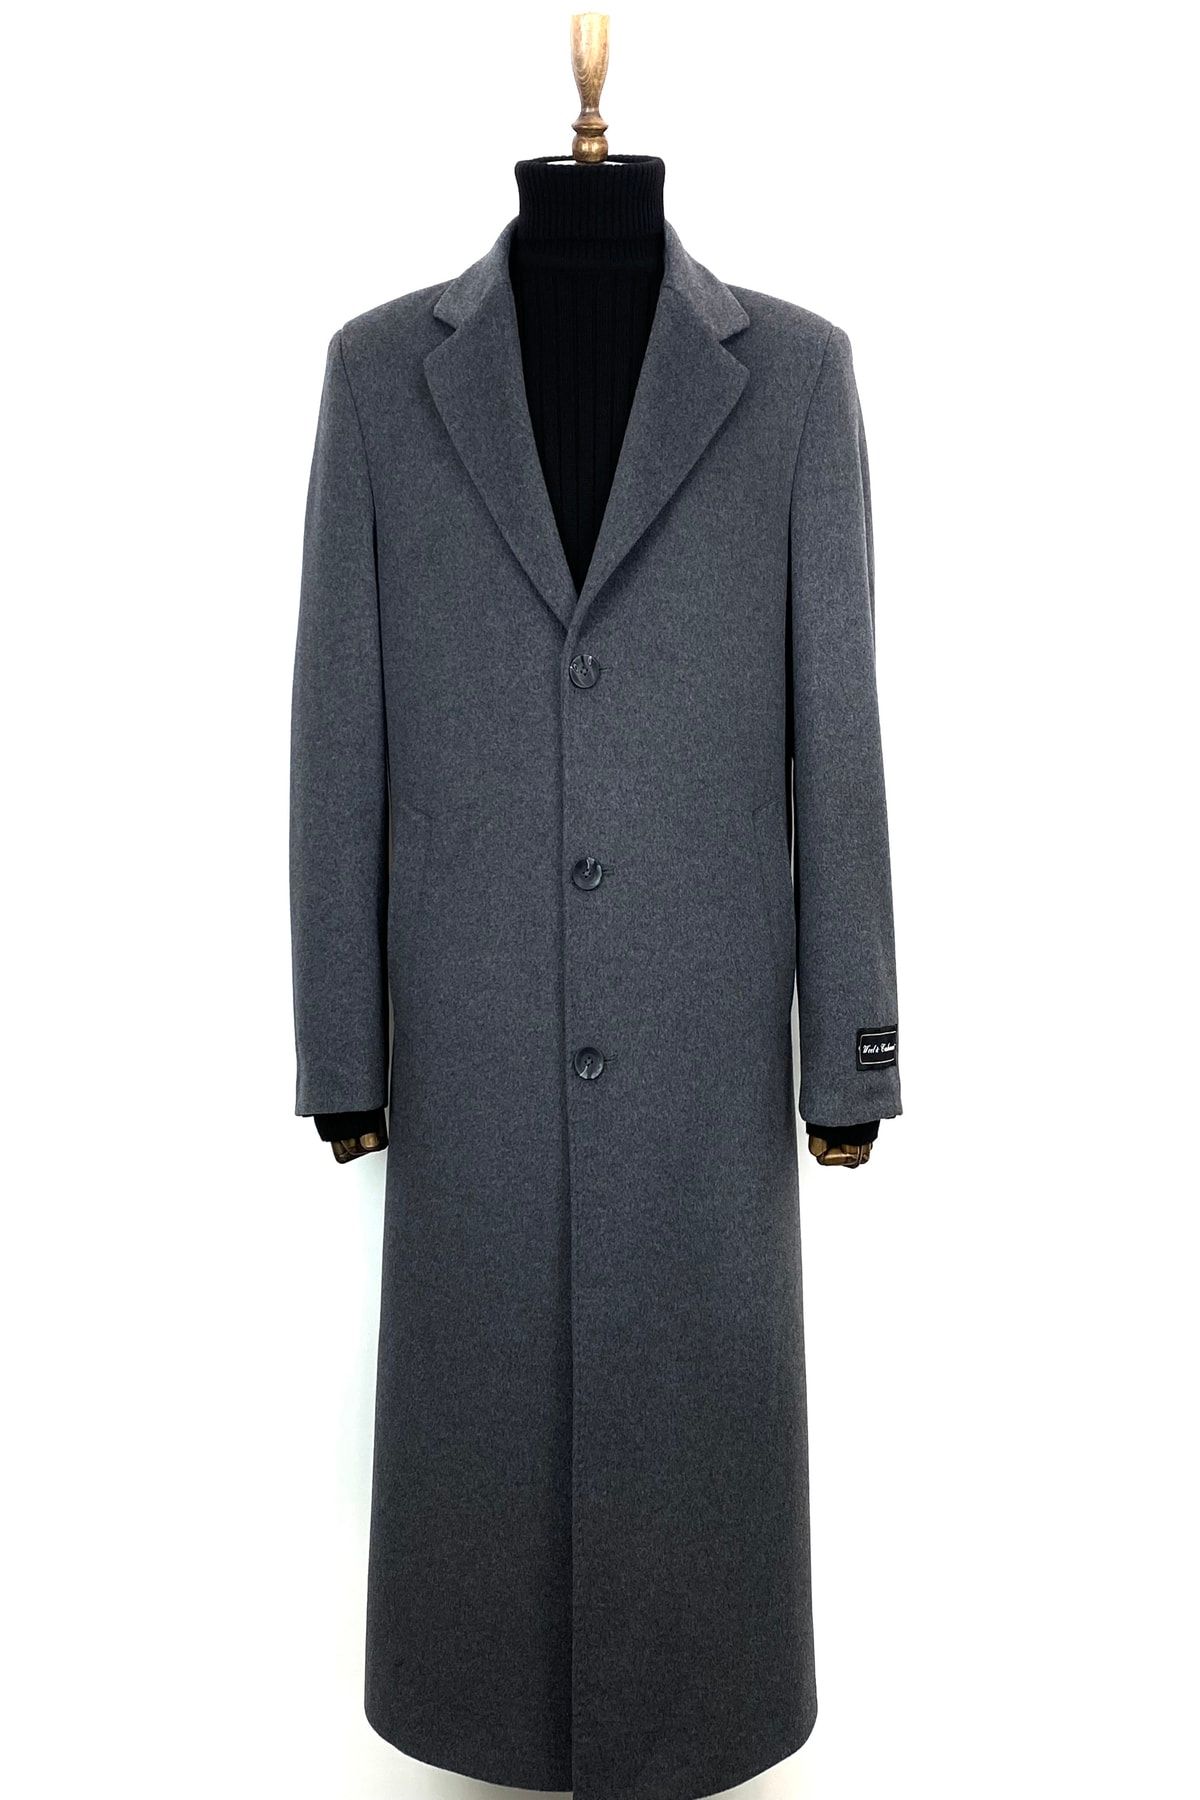 ŞAN GİYİM 1080 Erkek Gri Ceket Yaka Uzun Palto